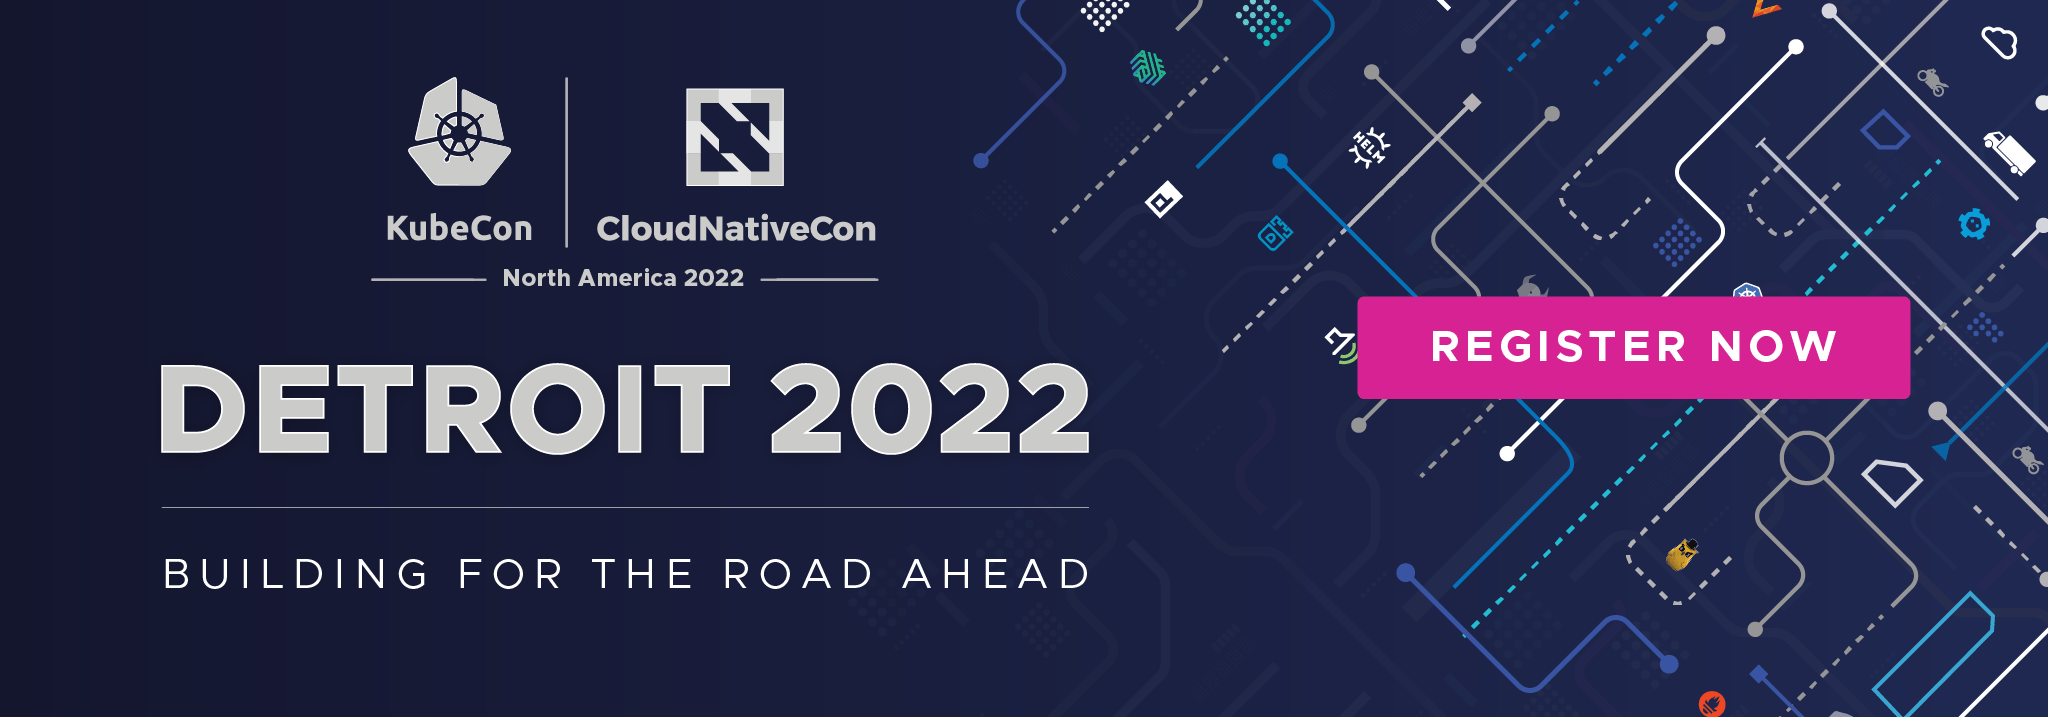 KubeCon + CloudNativeCon North America 2022